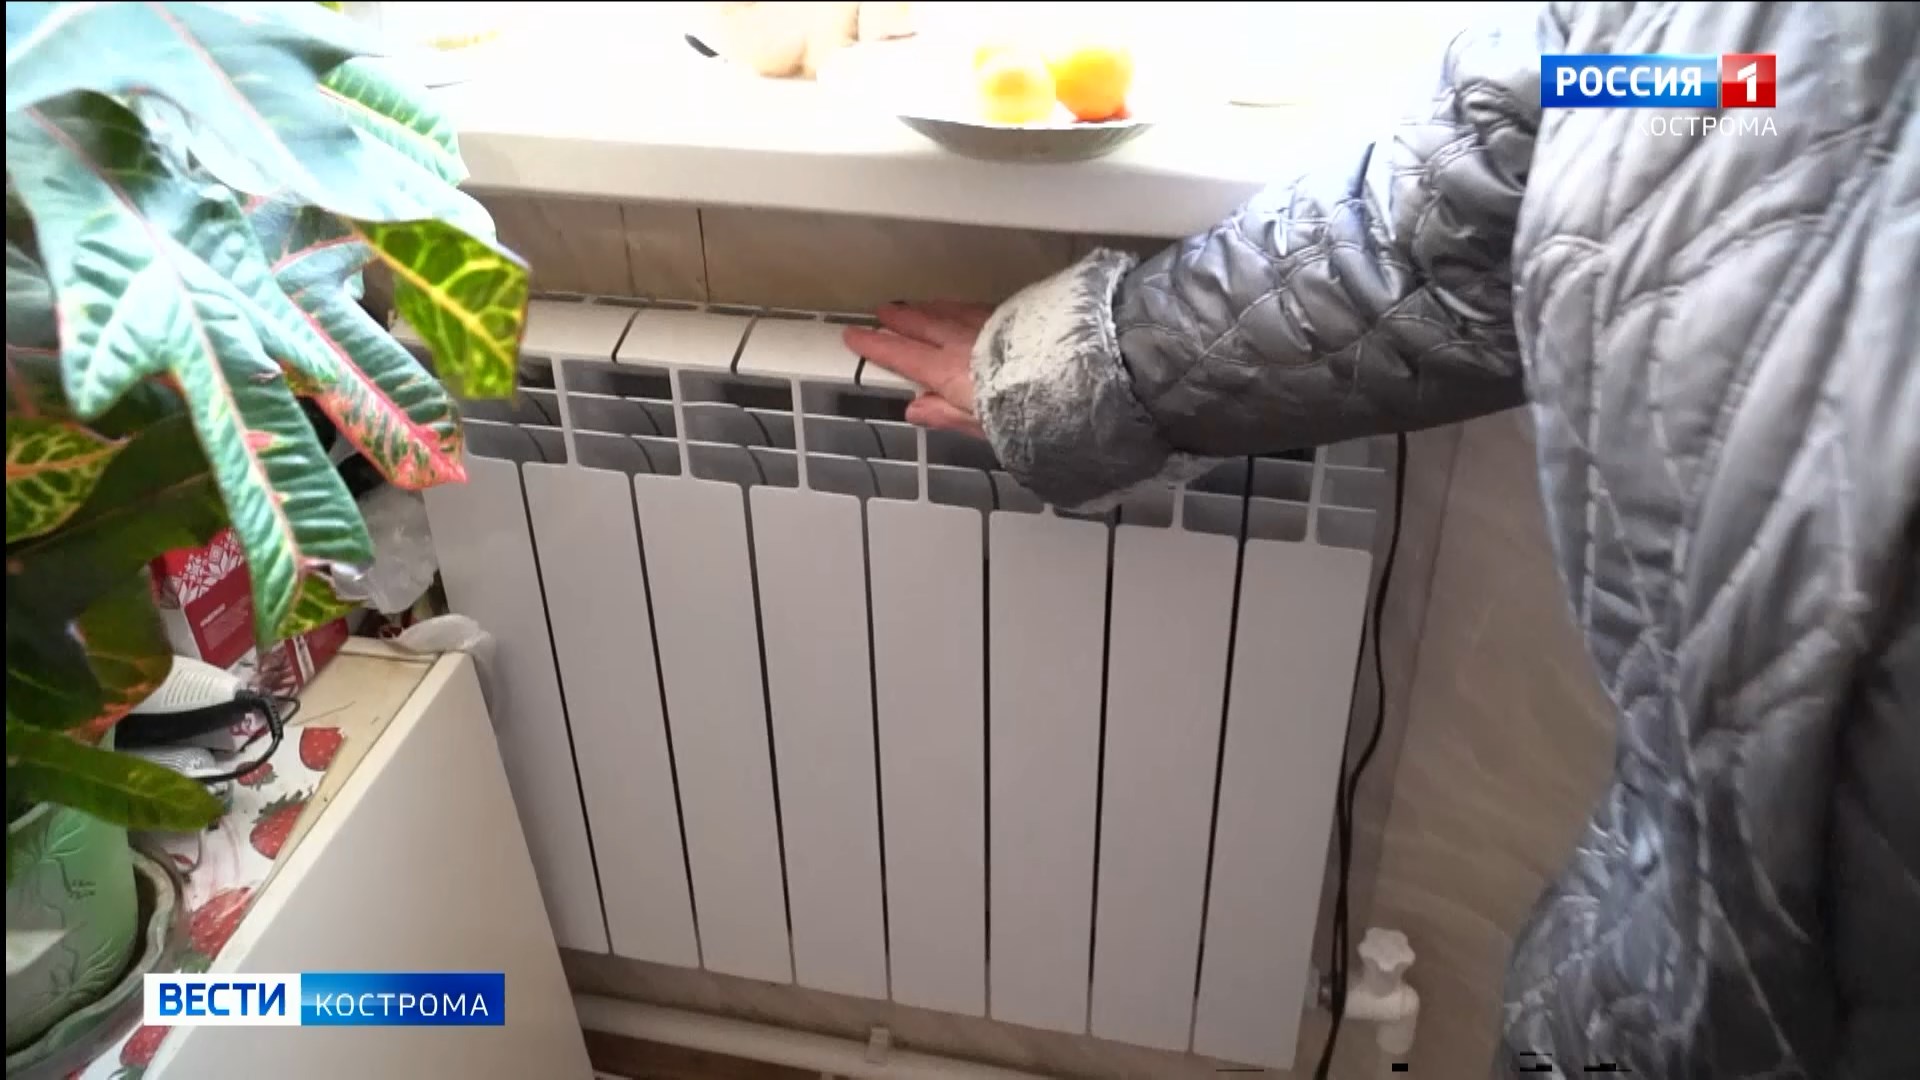 К теплоснабжению в Костроме подключен каждый третий многоквартирный дом